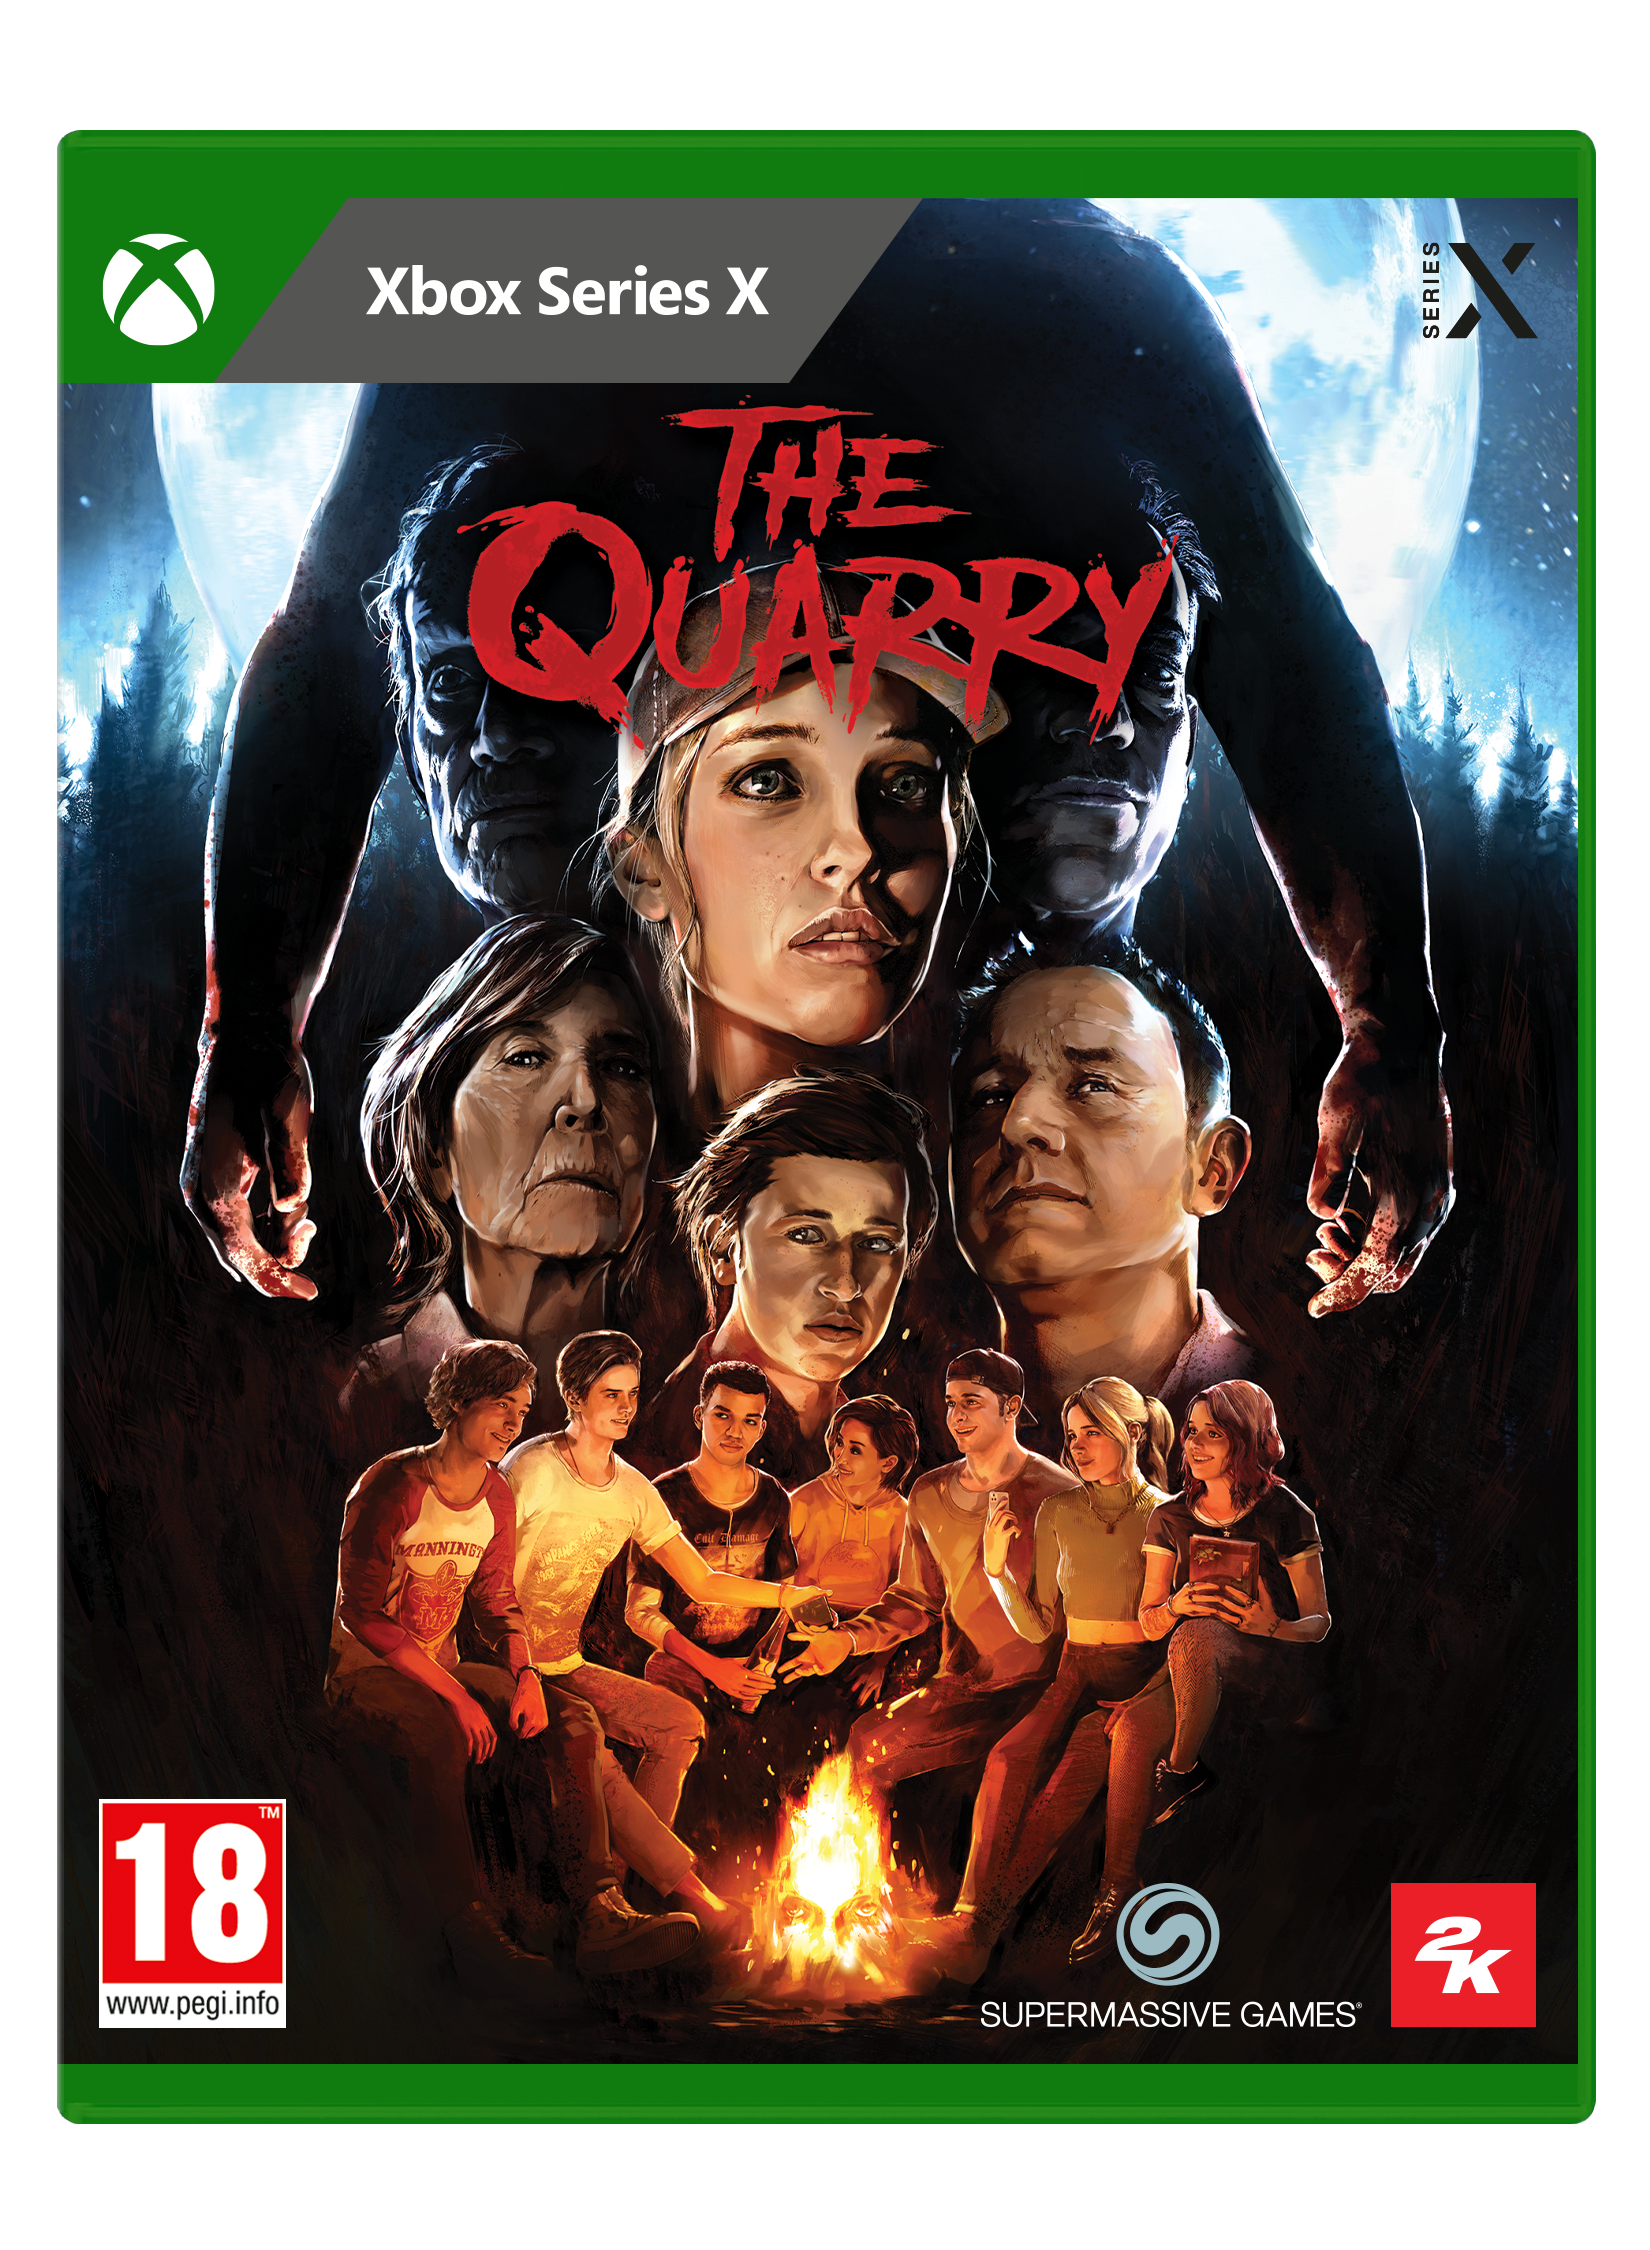 THE QUARRY - Xbox Series X